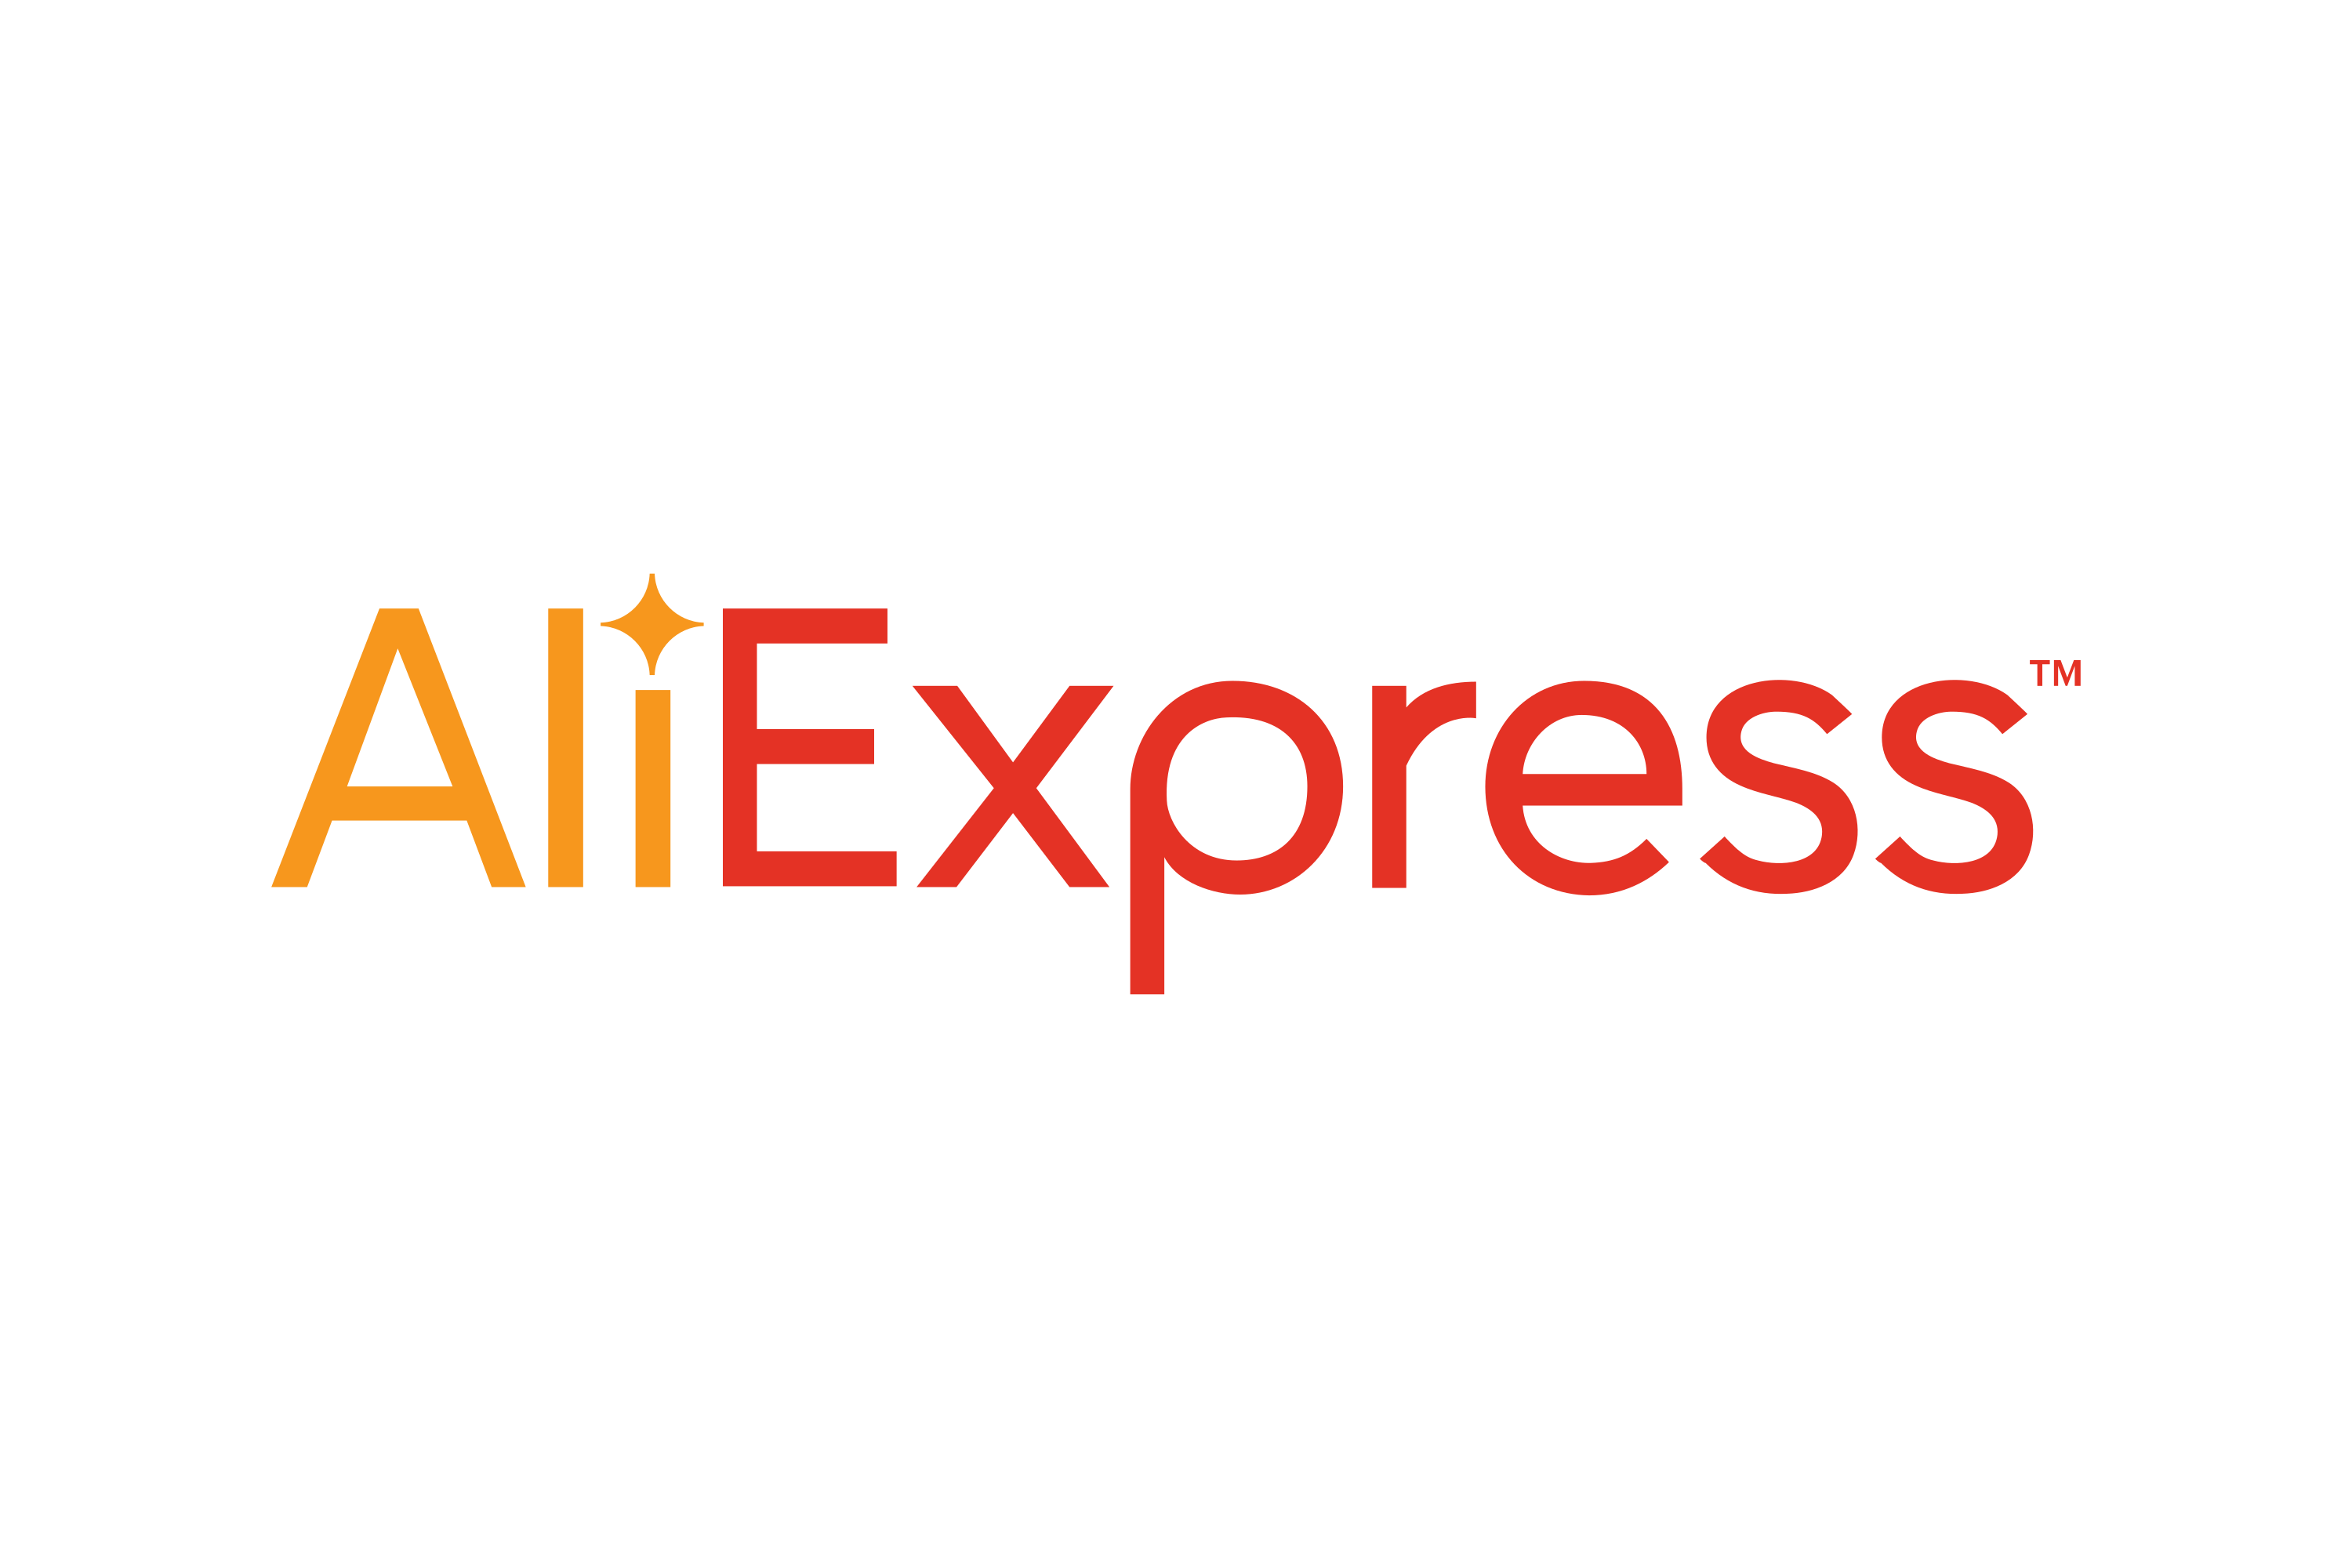 Logo aliexpress.com